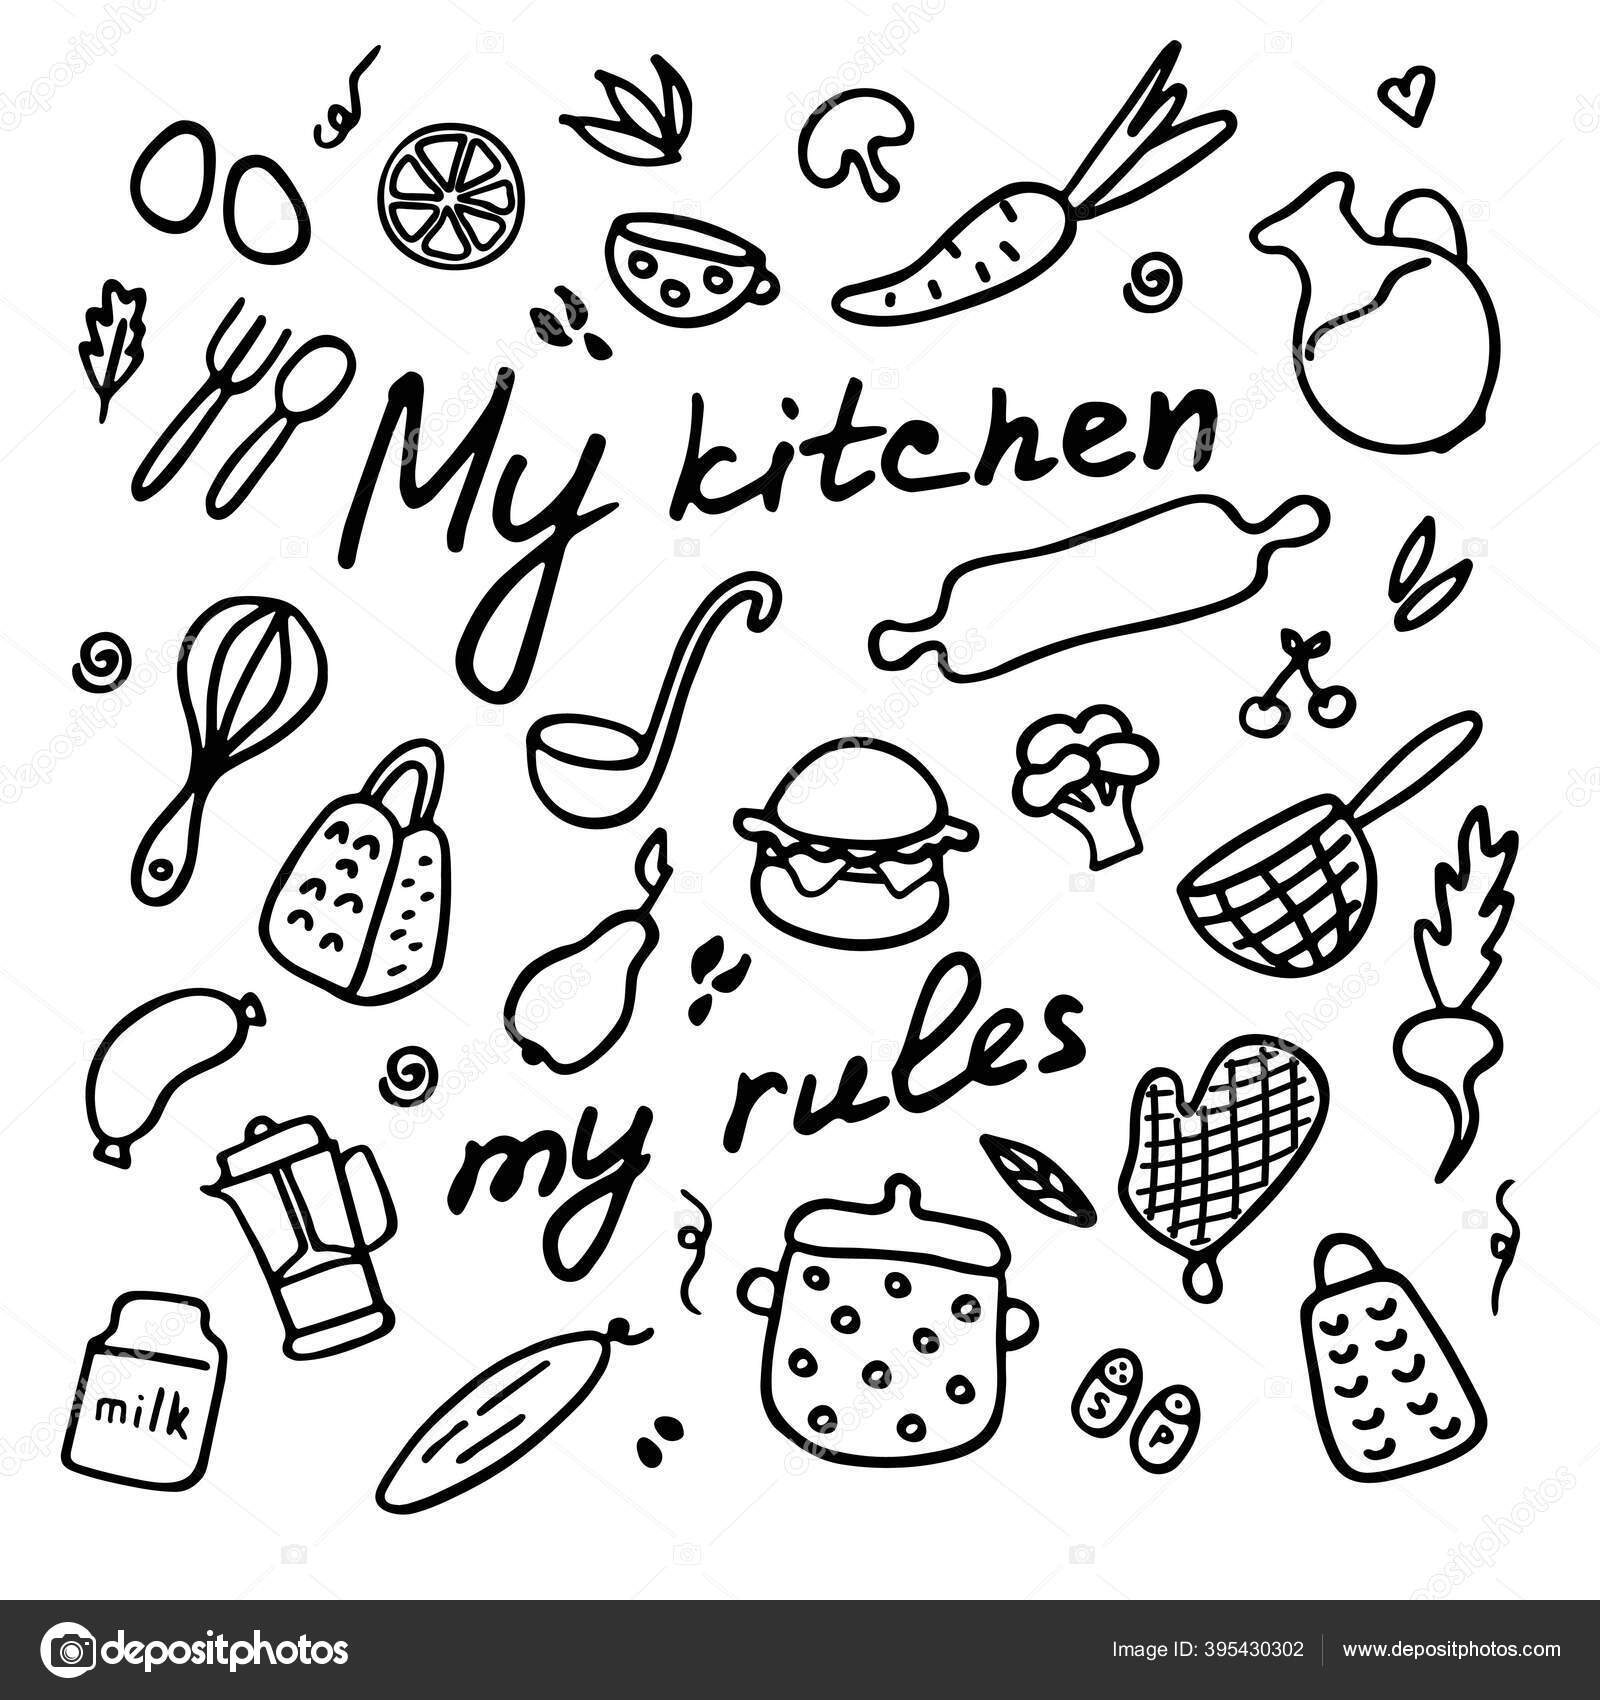 キッチン用品の大きなセット 台所用品 製品や料理のためのデバイスの落書きアイコン 手描きグラフィック 碑文私のキッチン 私のルール ベクターイラスト ストックベクター C Lidia Sv